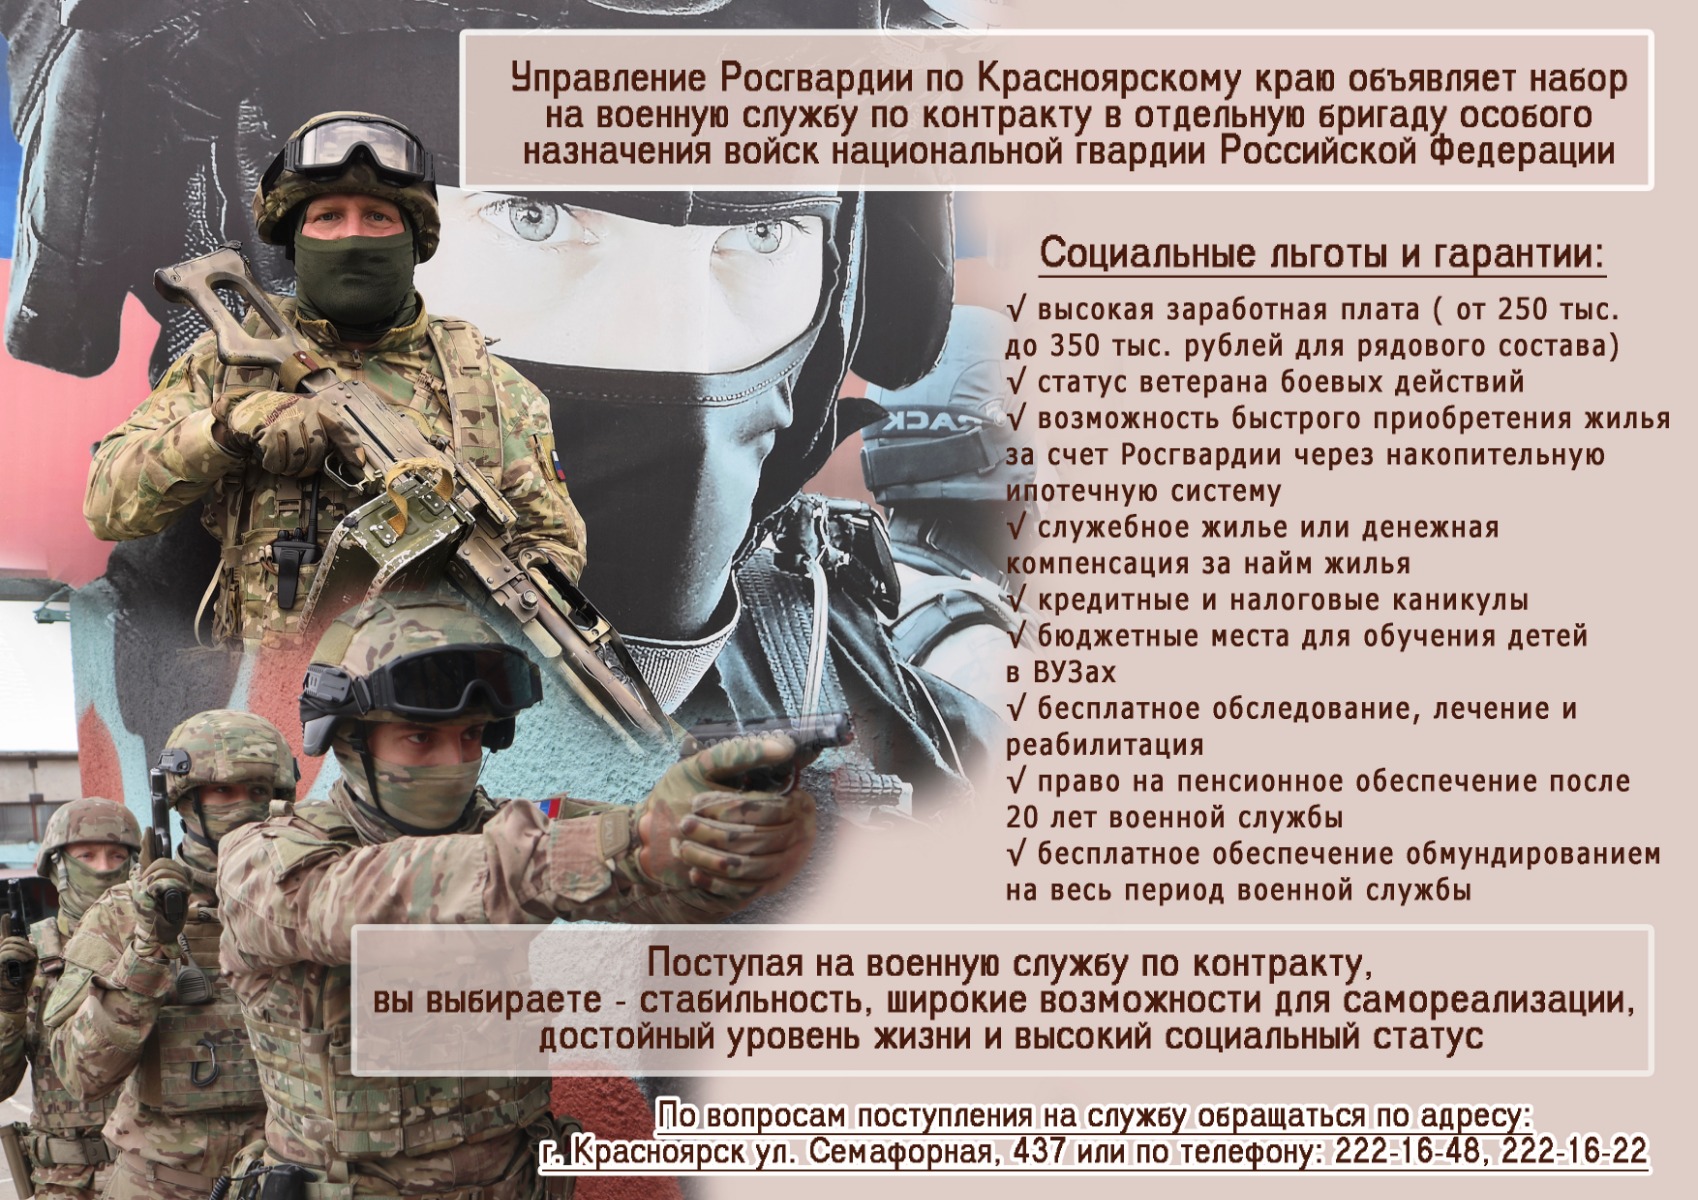 Управление Росгвардии по Красноярскому краю объявляет набор на военную службу по контракту